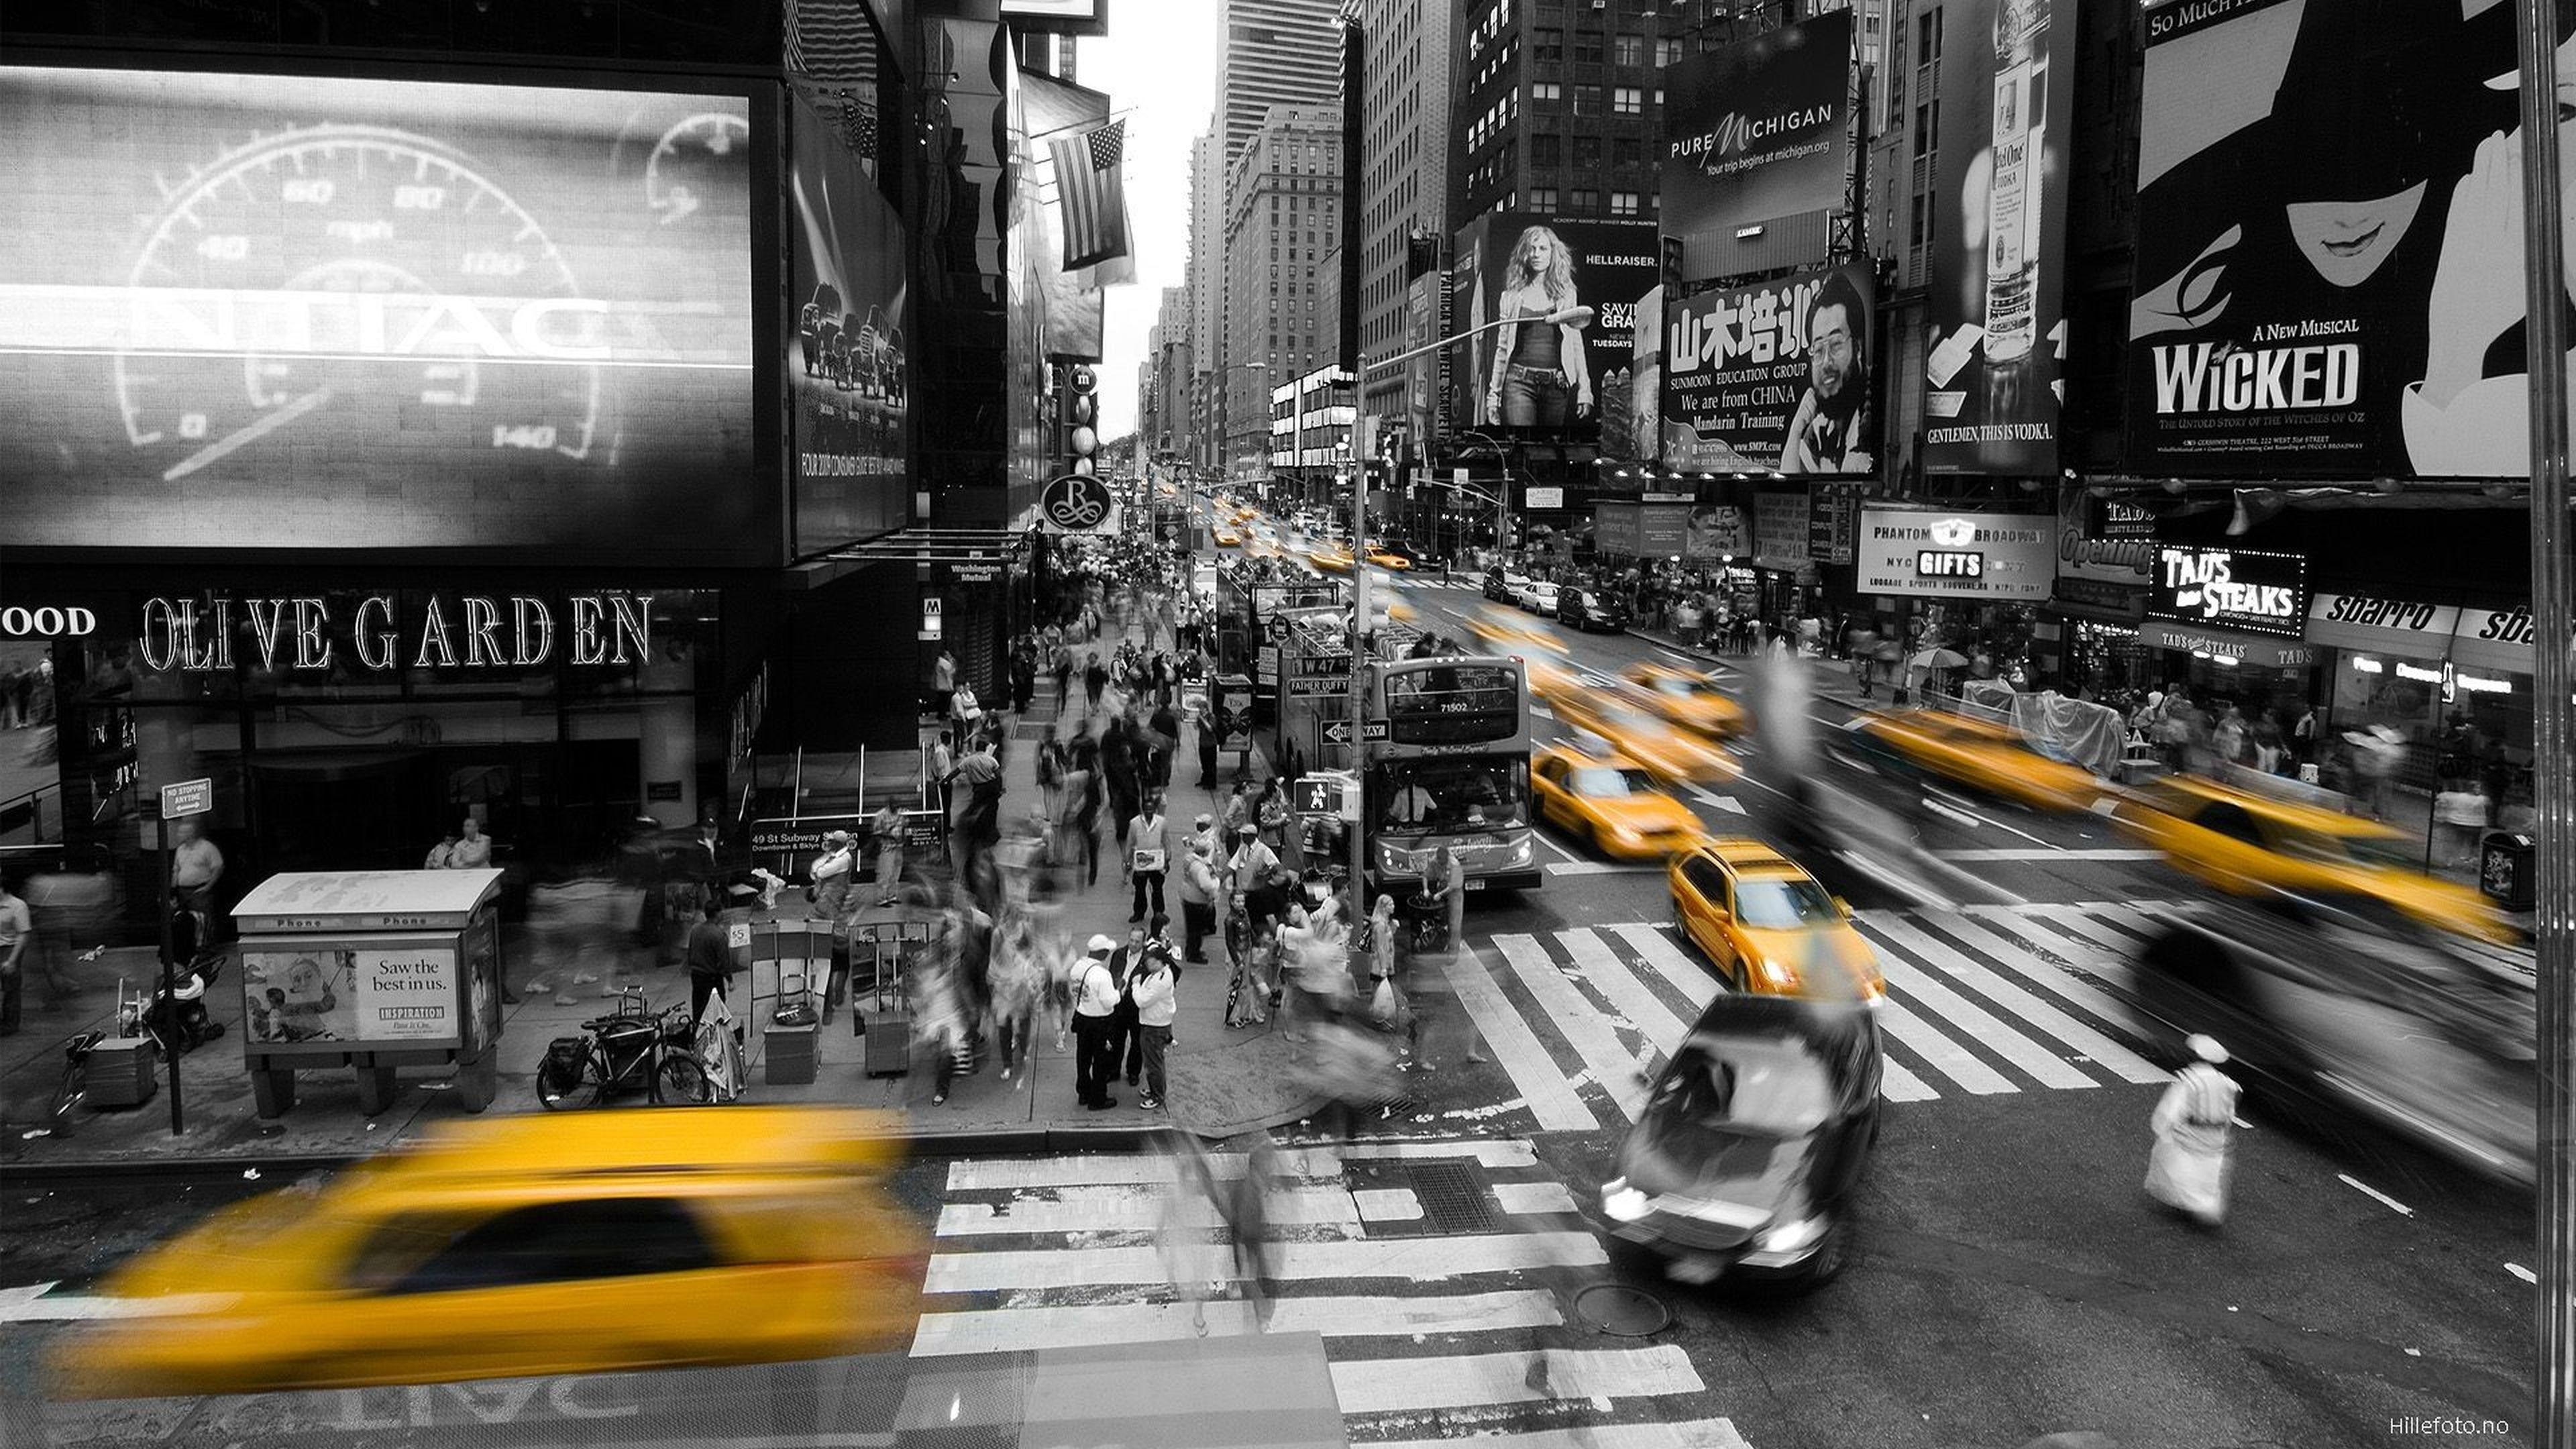 뉴욕 택시 벽지,검정,도시 지역,노랑,거리,택시